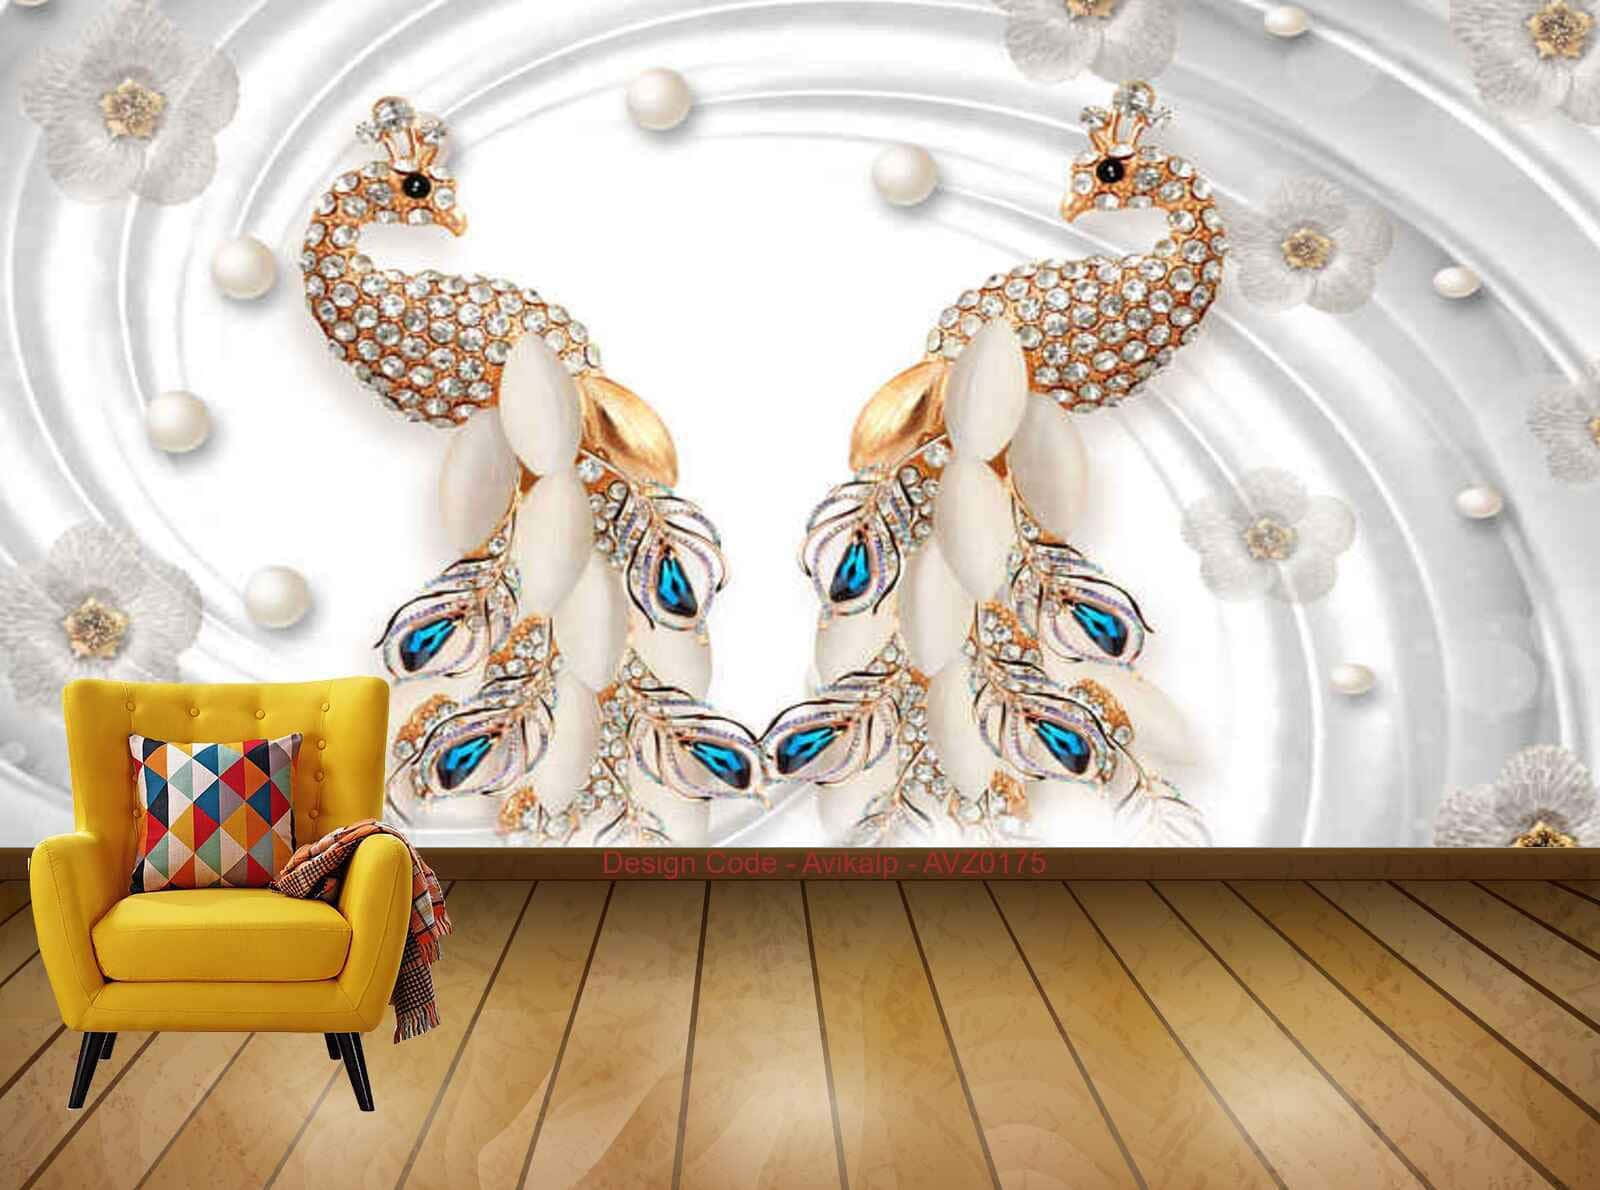 Peacock Earrings Wallpaper Background For Living Room